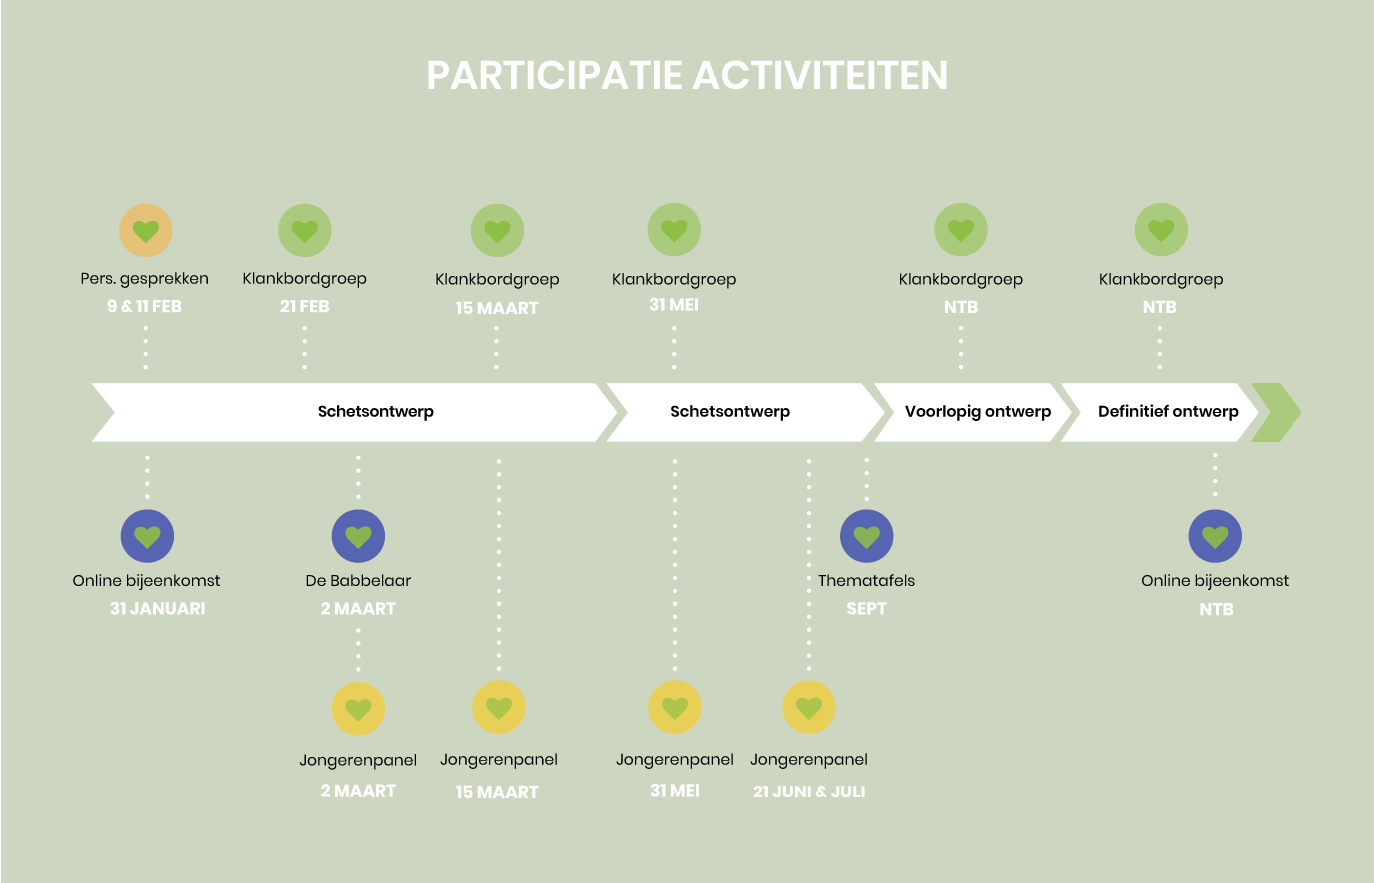 De planning van participatie activiteiten